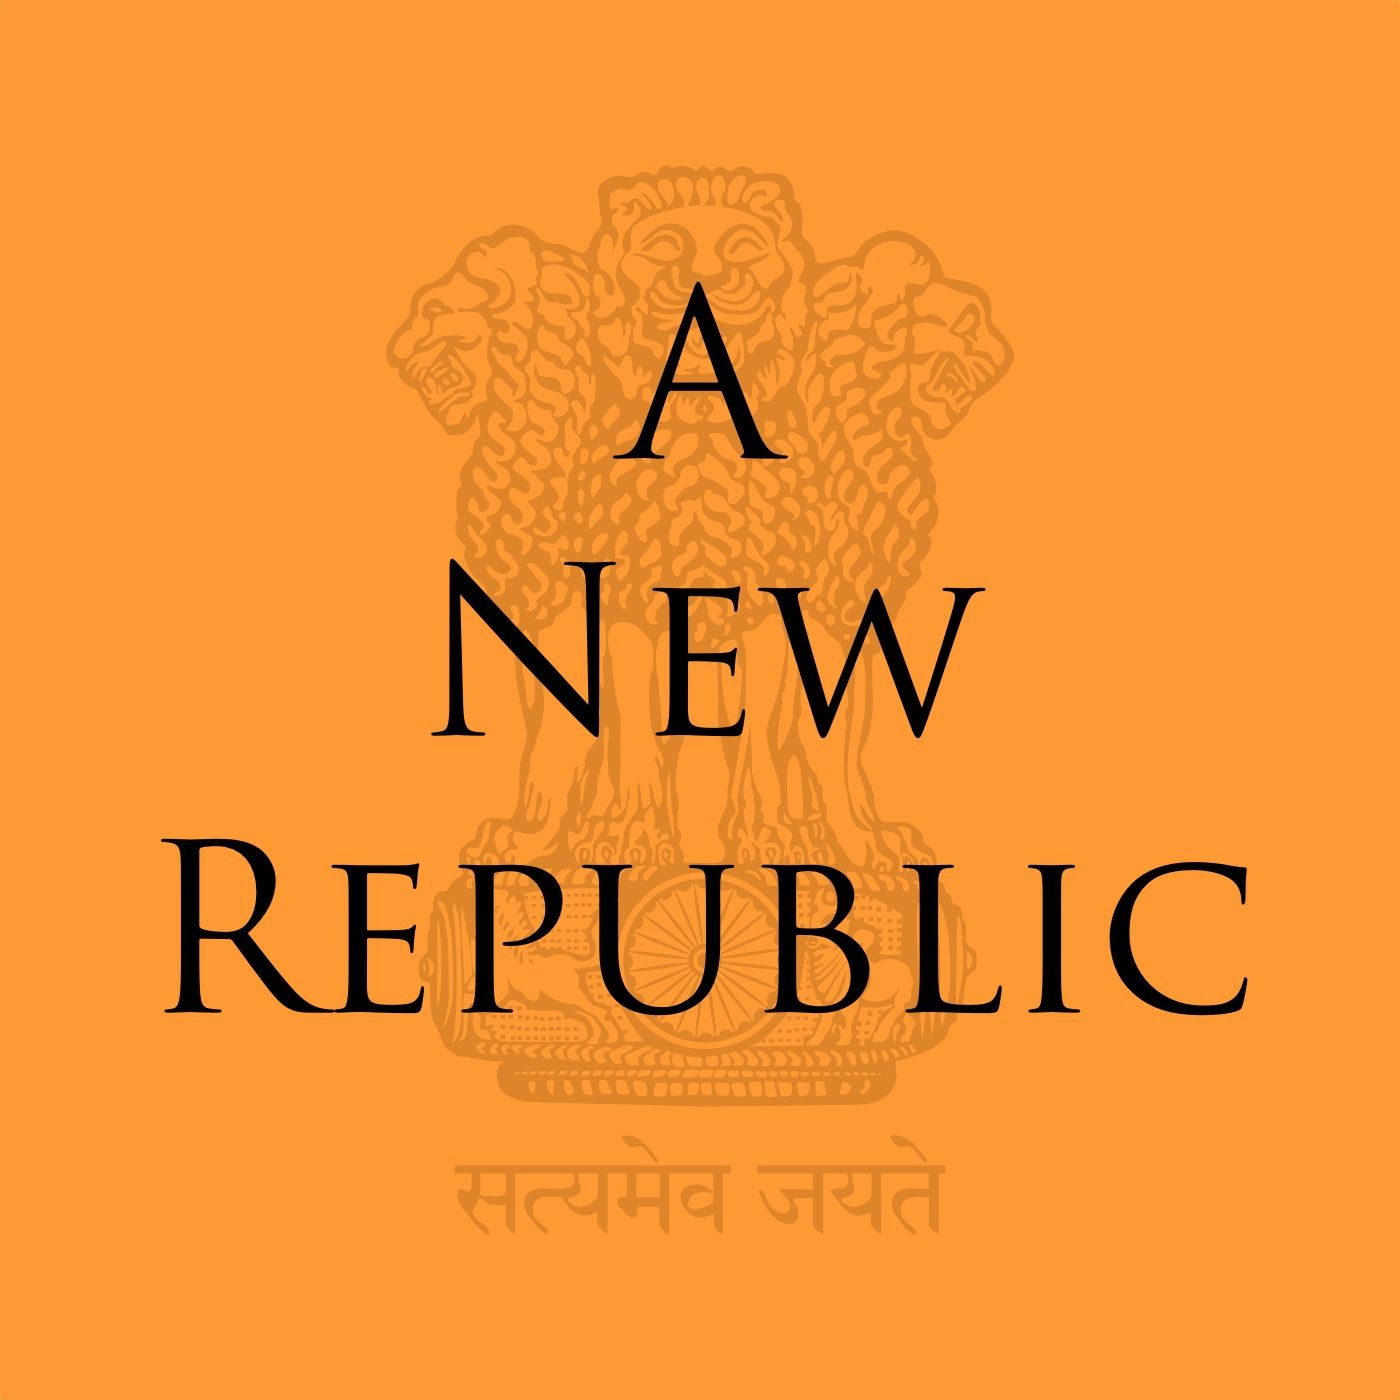 A New Republic - Episode 12: The Nehru Report